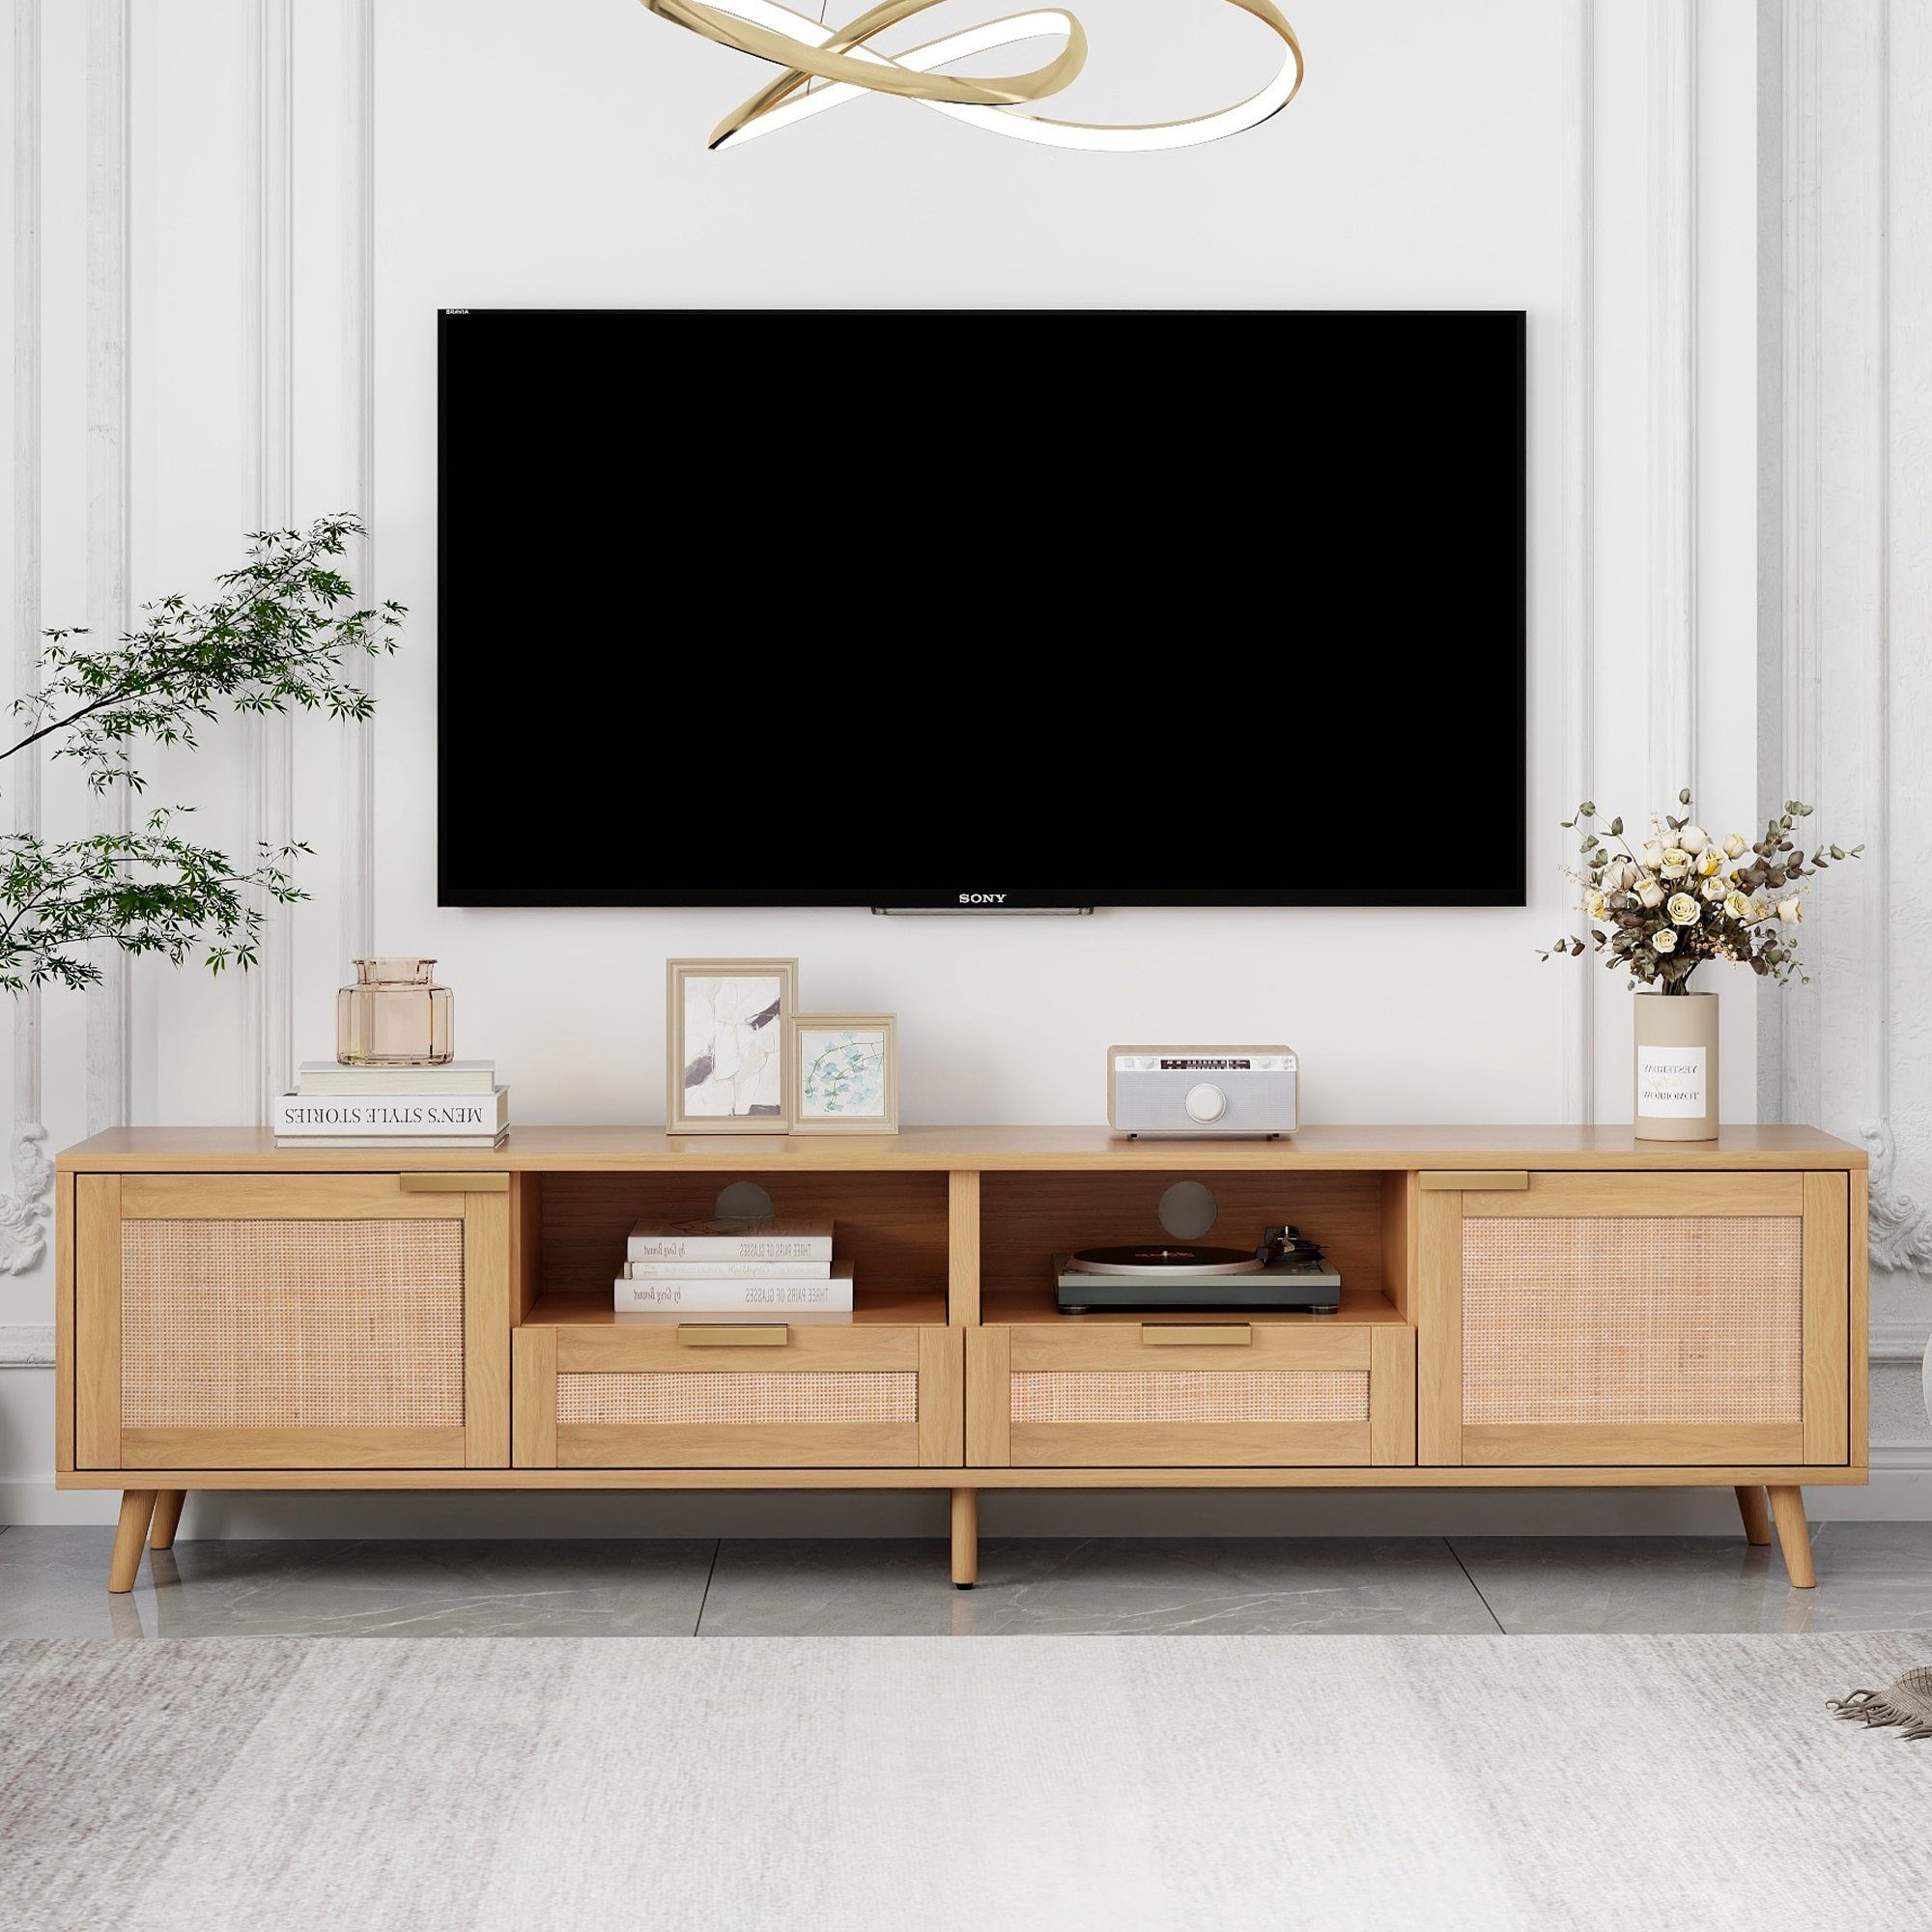 OKWISH TV-Schrank Hochwertiger Holz-TV-Schrank mit Echtholzfüßen (TV-Konsolentisch,200*37*49cm) mit massiven Holzfüßen, Geflochtener Rattan-TV-Boards